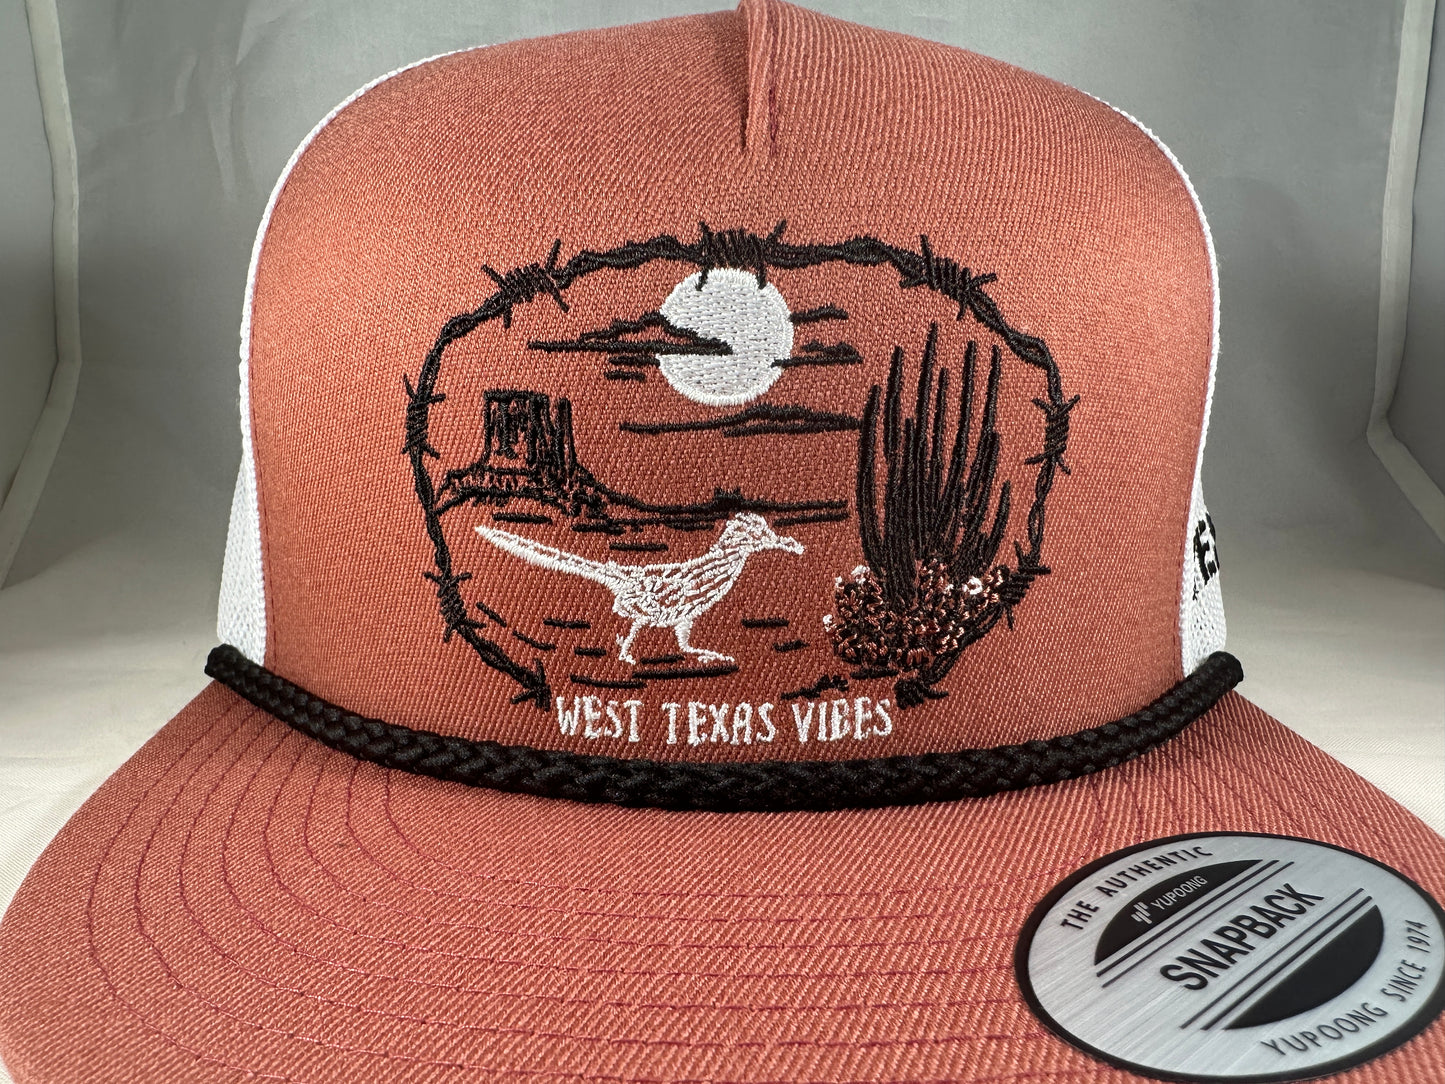 West Texas Vibes - Salmon/White Mesh